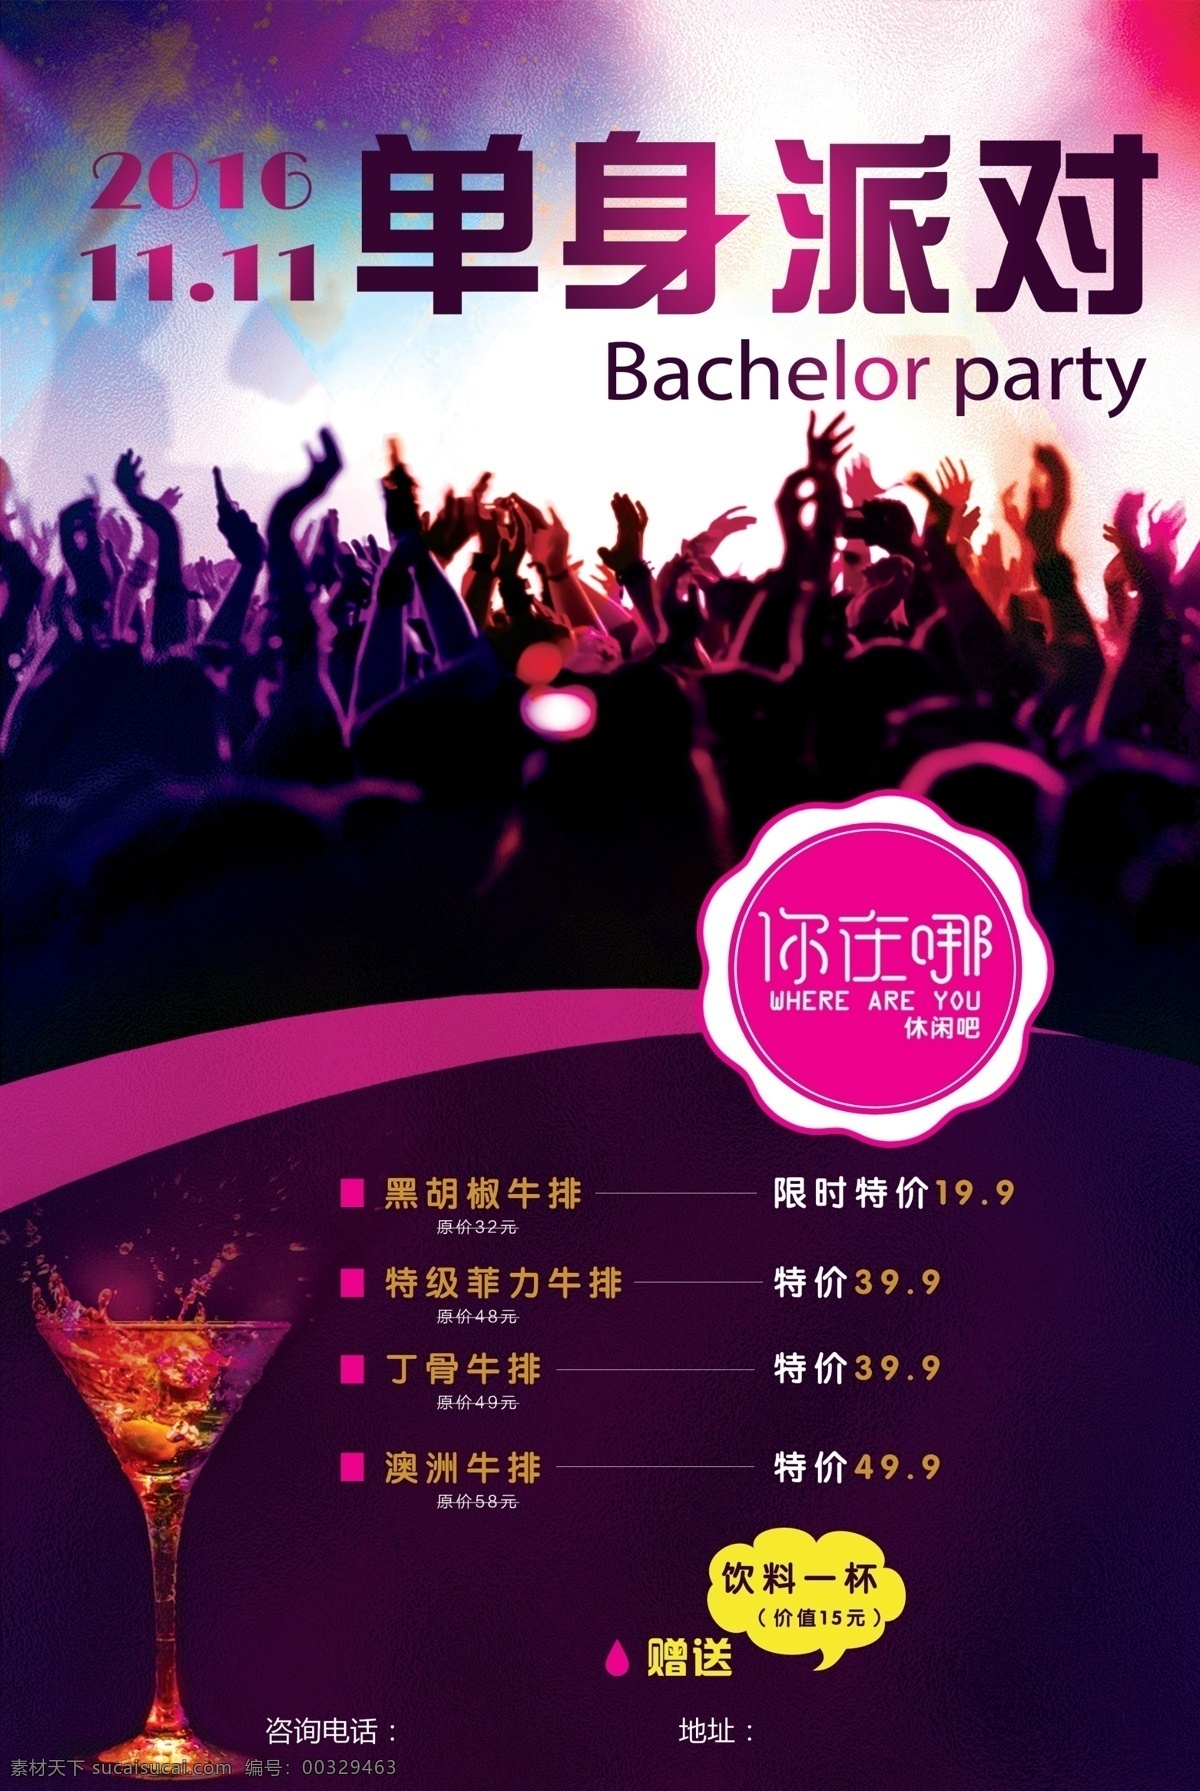 单身派对海报 单身 party 派对 11.11 双十一 牛排 夜店 深色 紫色 酒杯